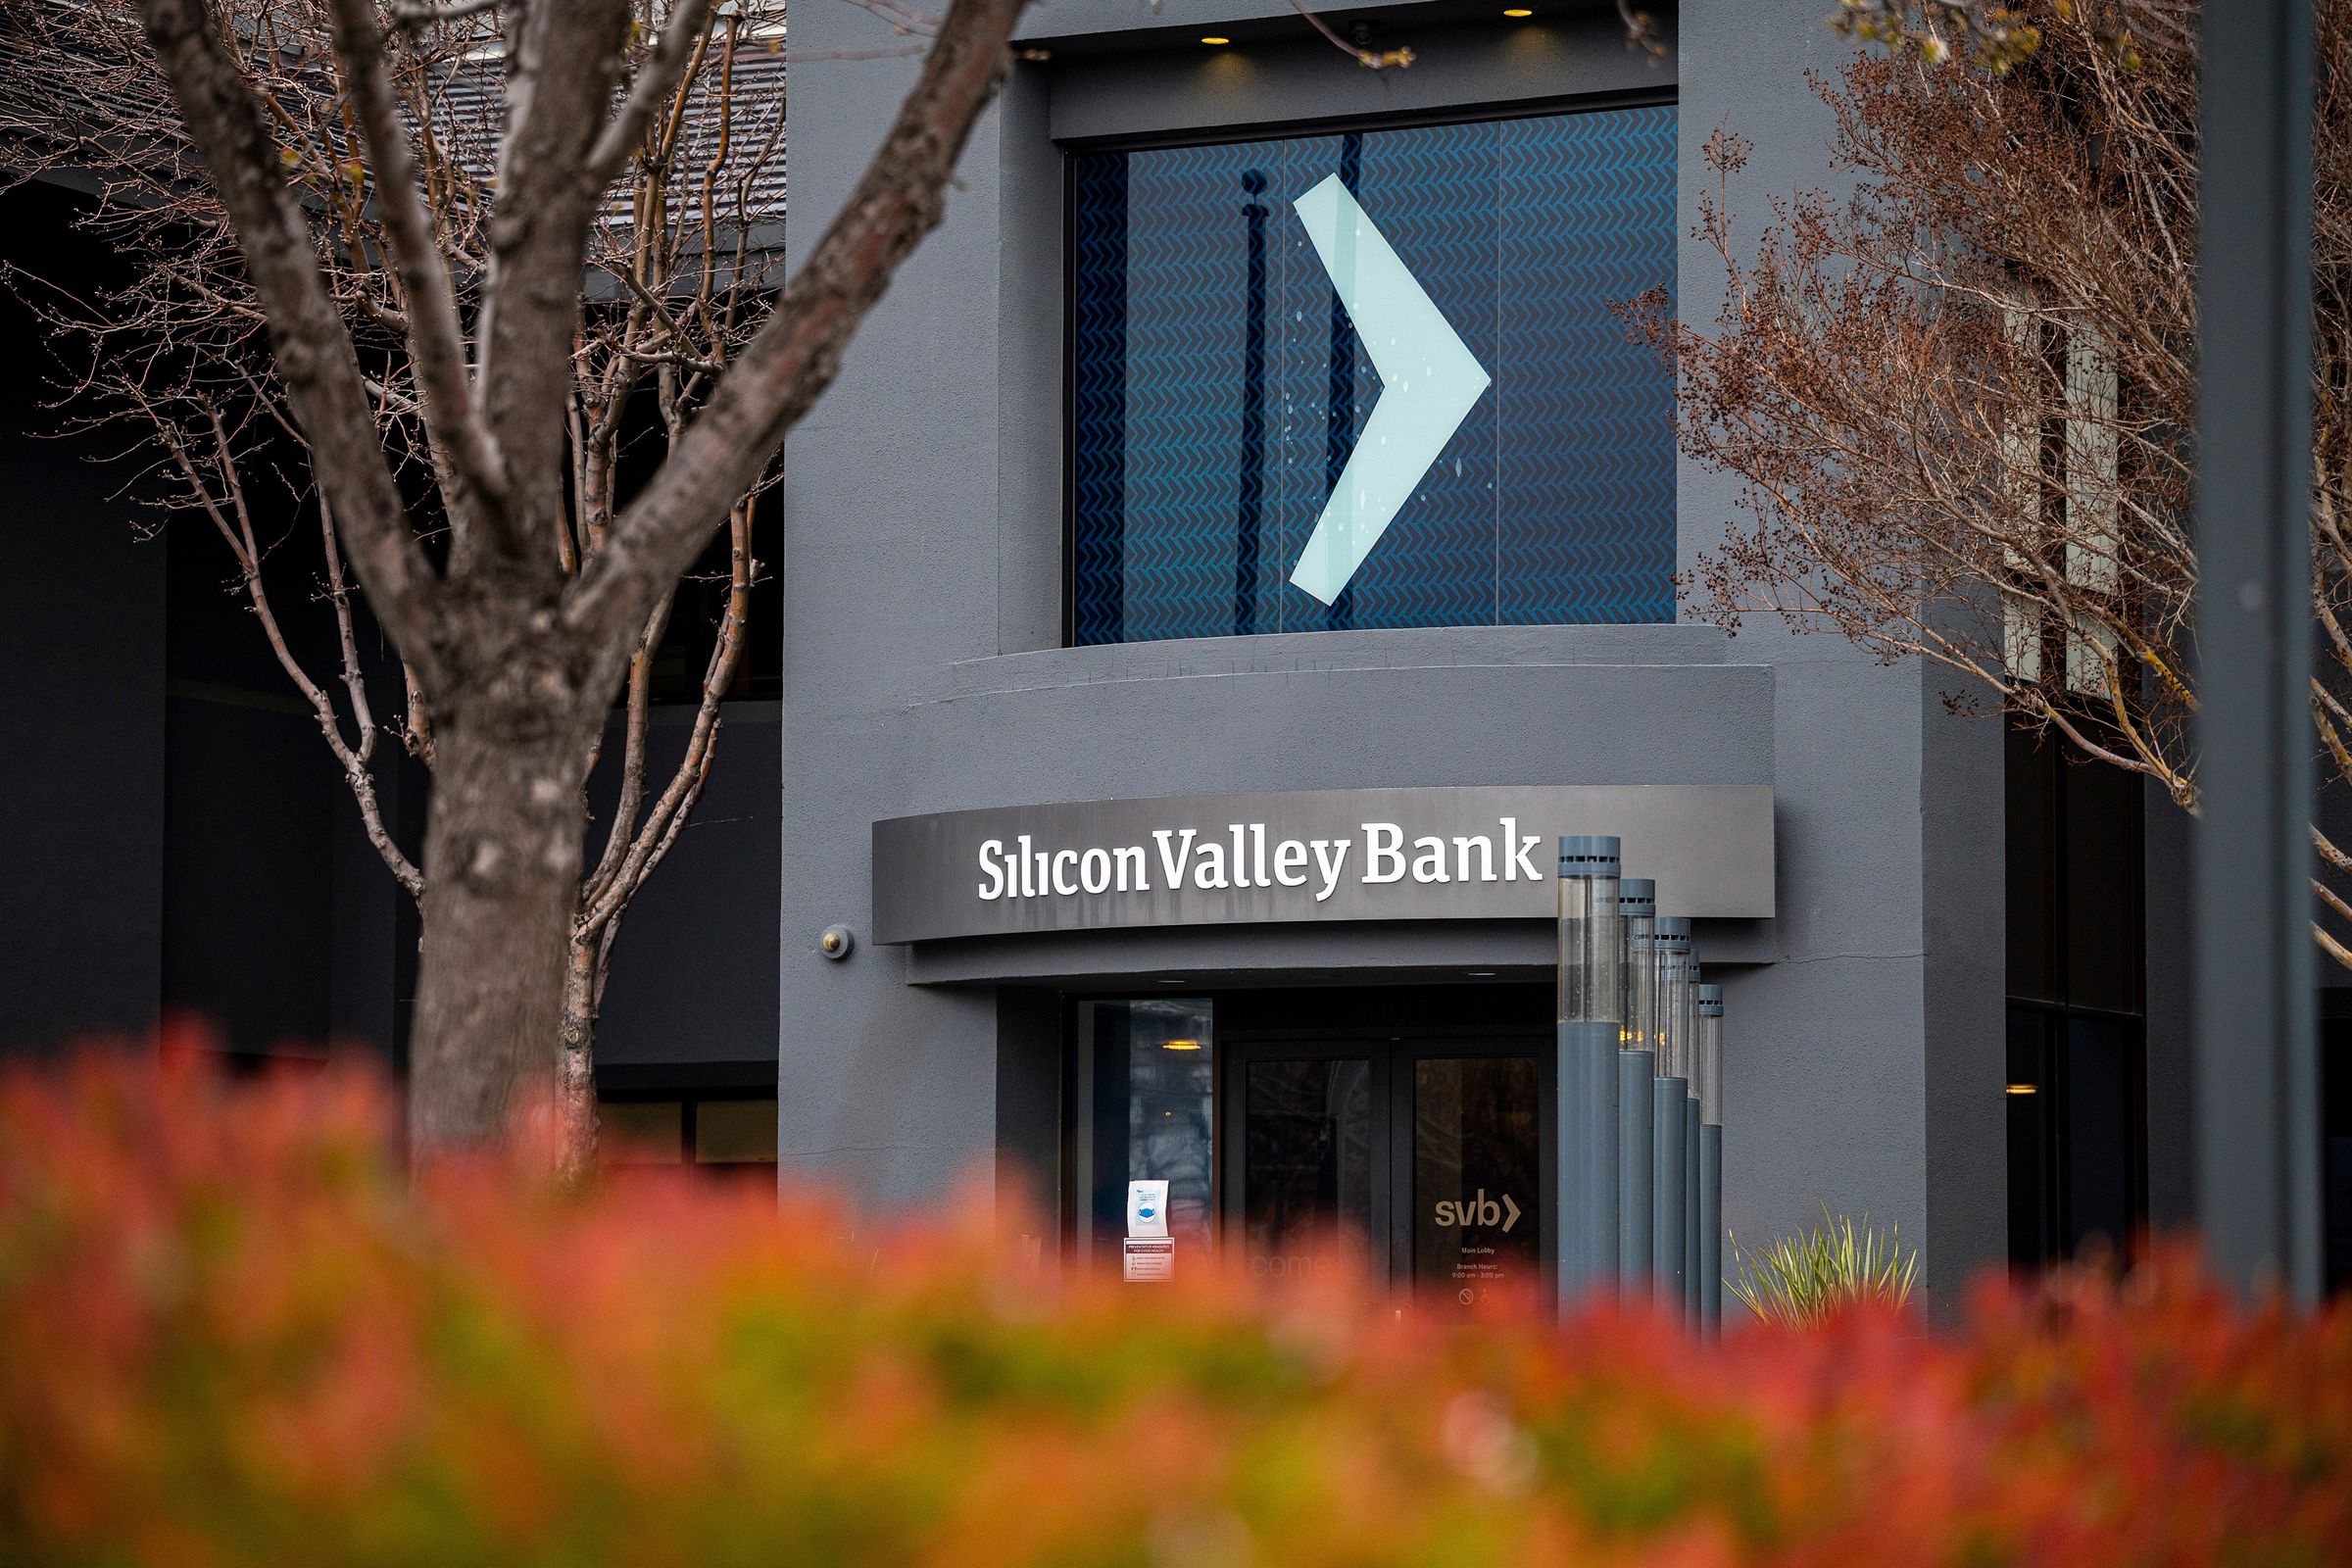 Silicon Valley Bank has failed